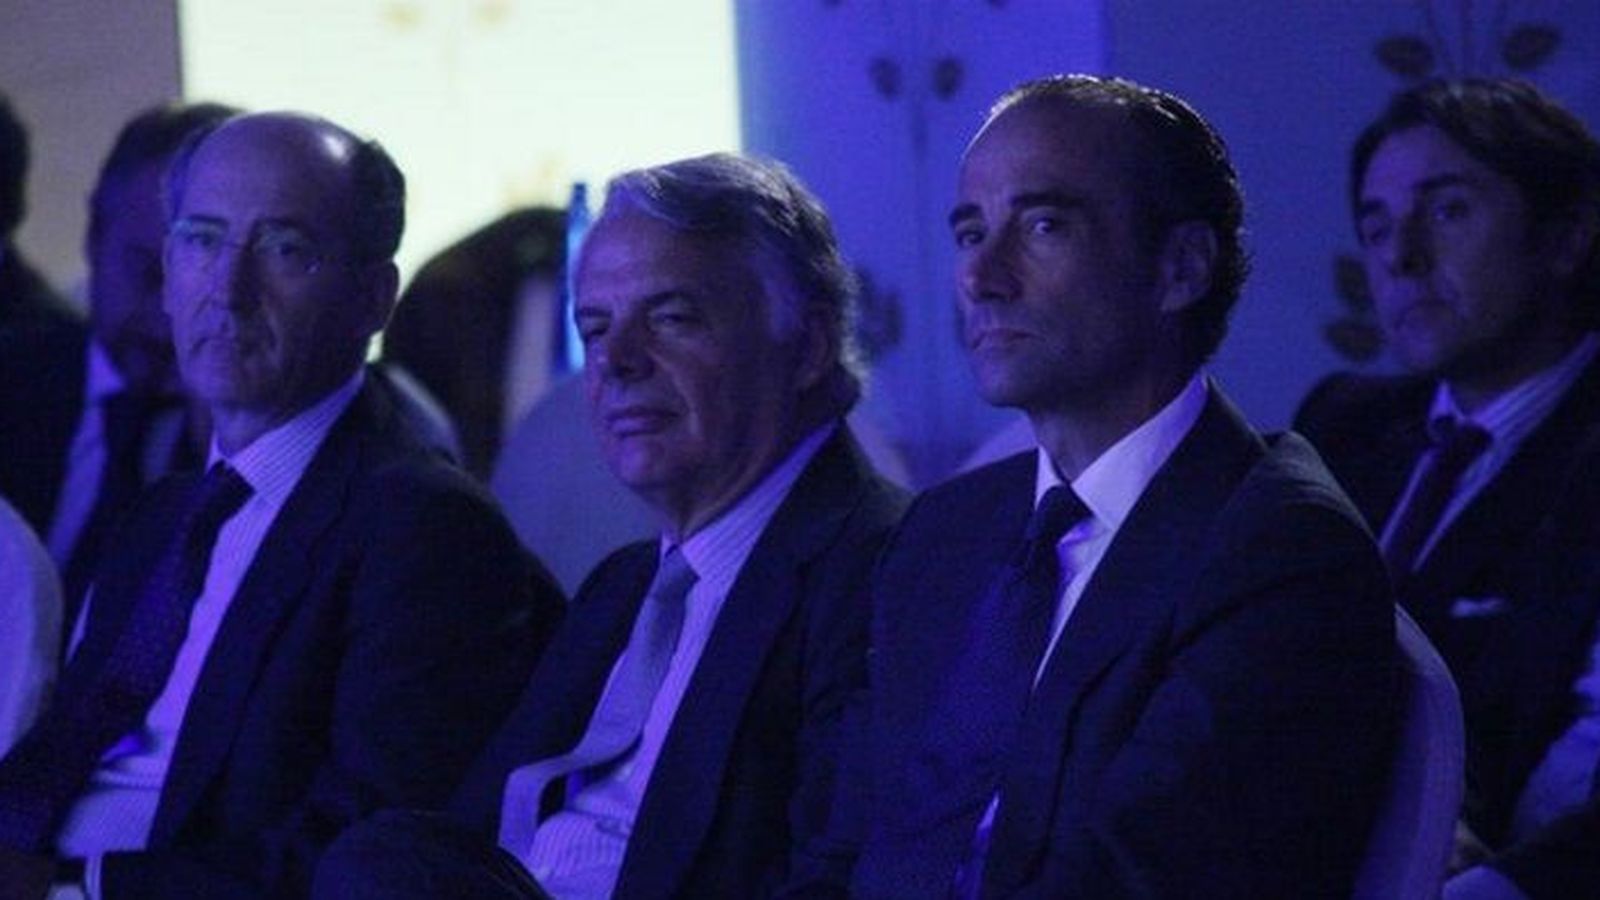 Foto: De iz. a drcha. Marco Colomer, presidente de Pryconsa; Ignacio Garralda, presidente de Mutua y Donato González-Sánchez, presidente de SG España. 